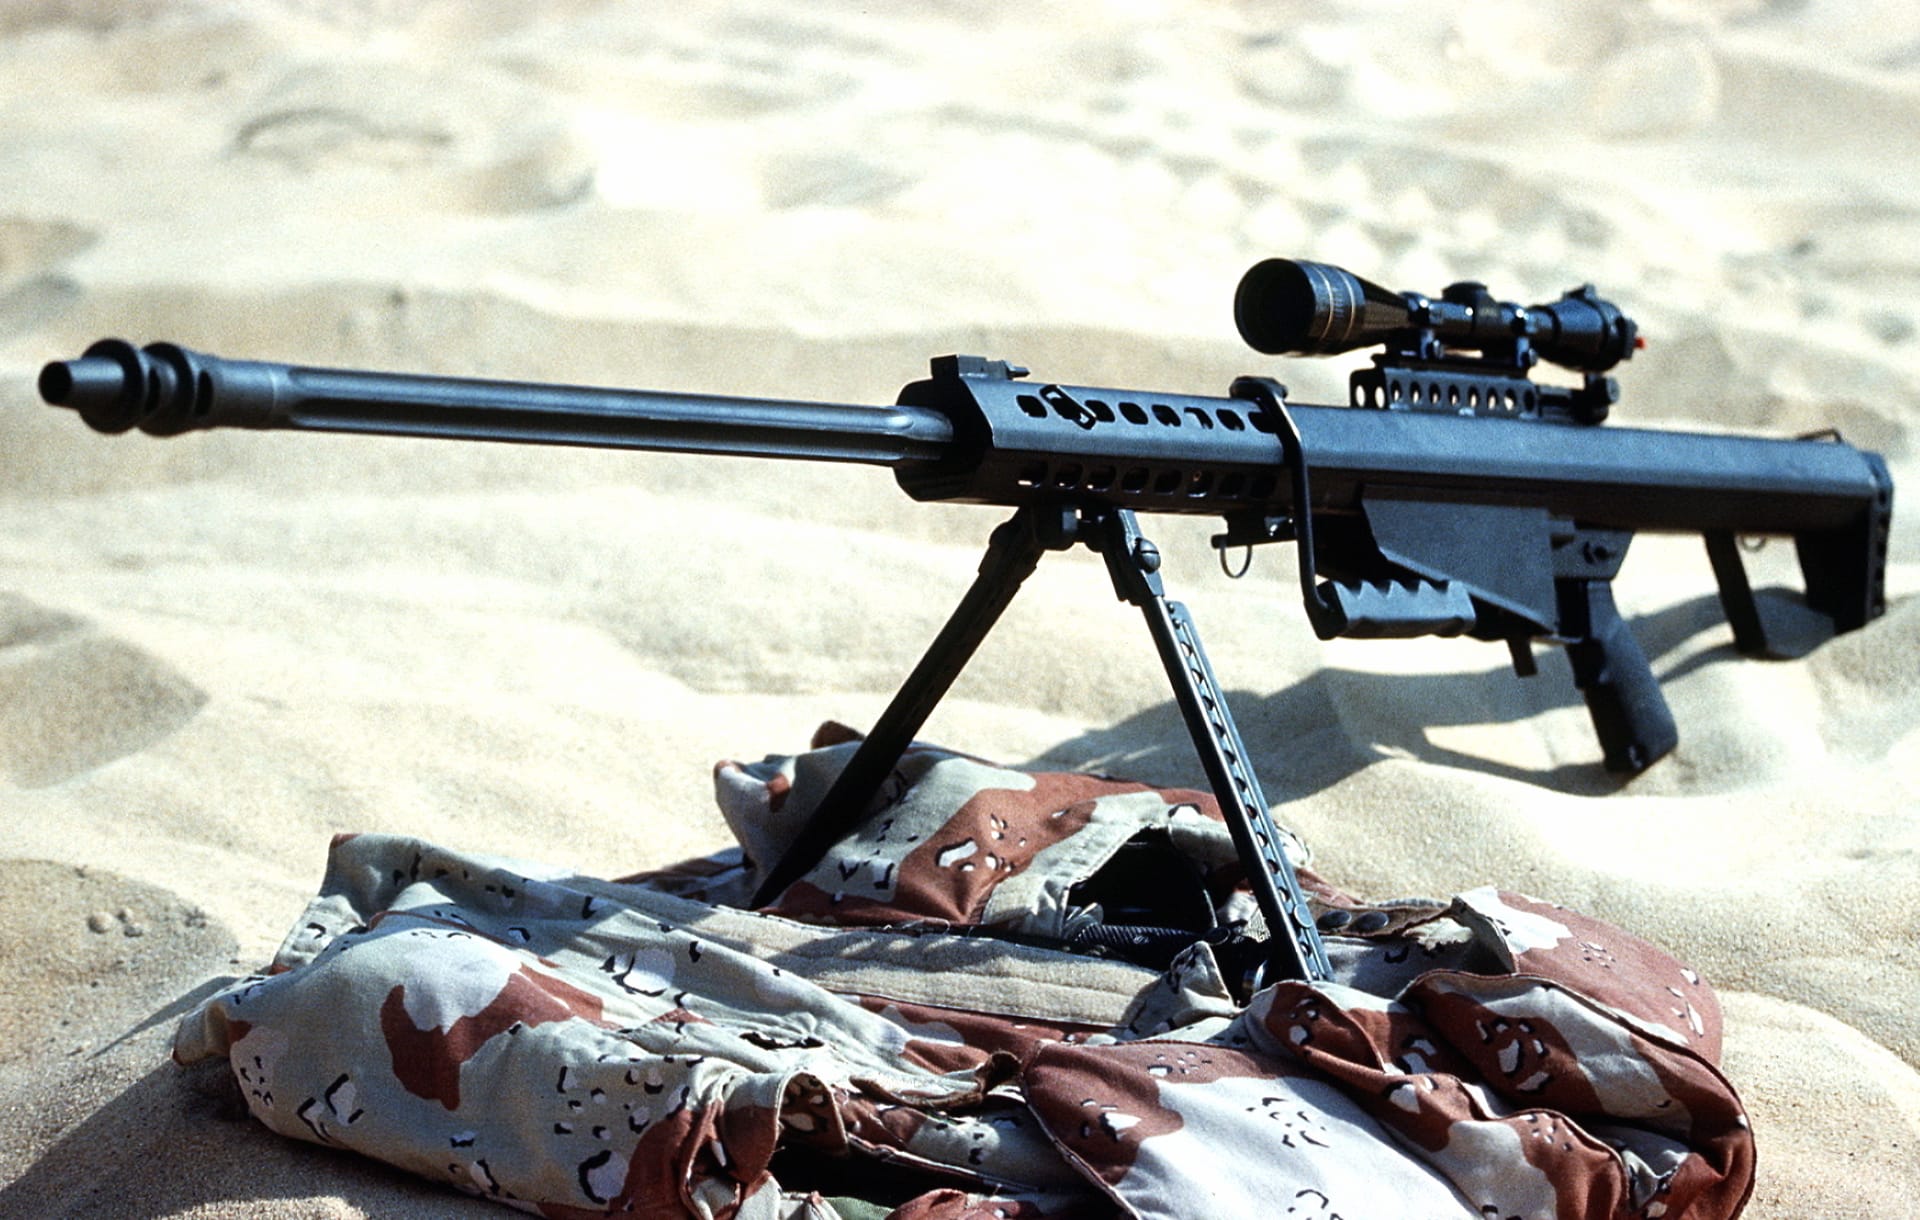 Barrett M82 Sniper Rifle at 1152 x 864 size wallpapers HD quality